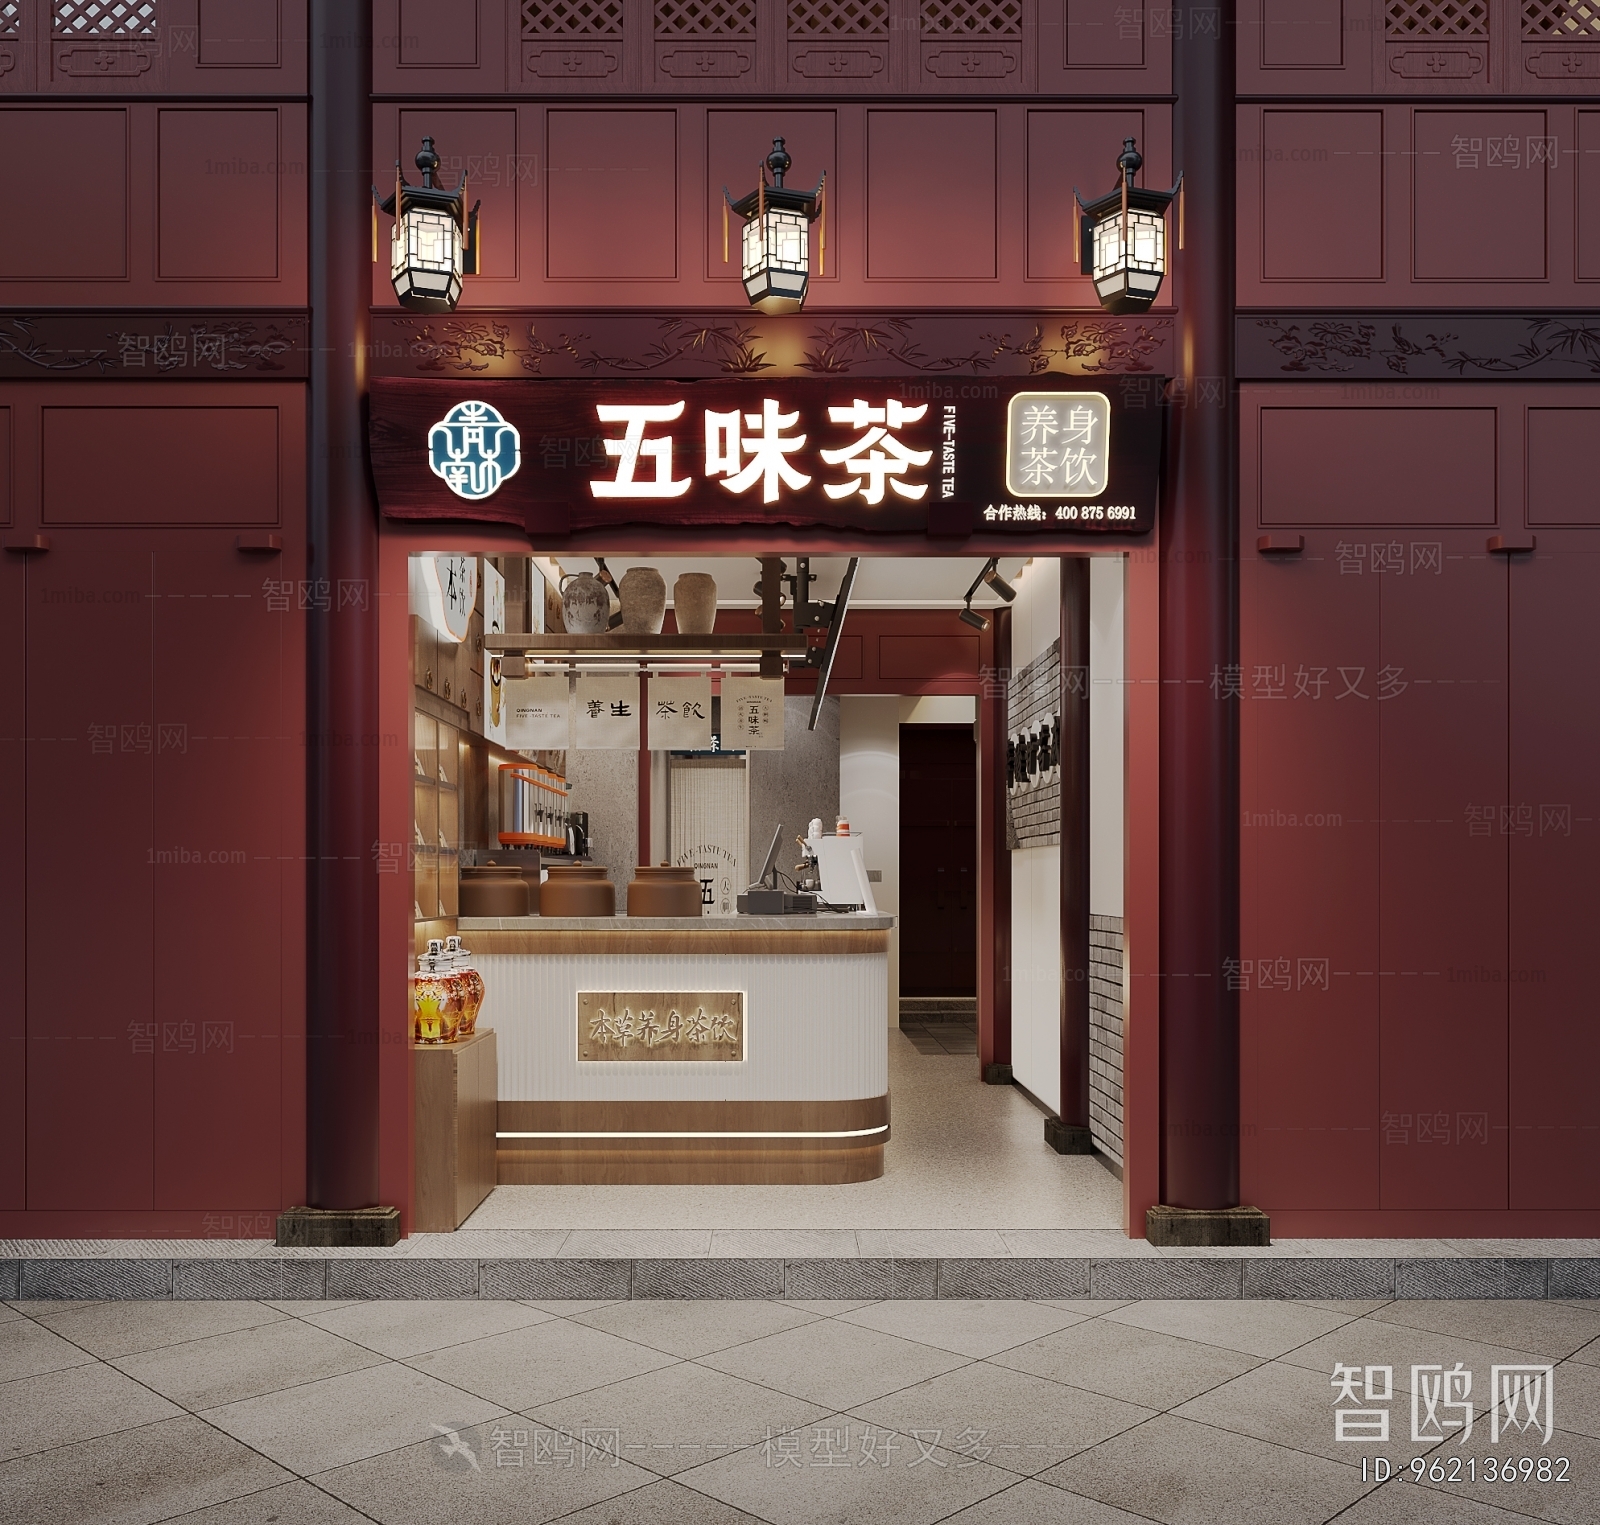 多场景-新中式奶茶店餐厅门头